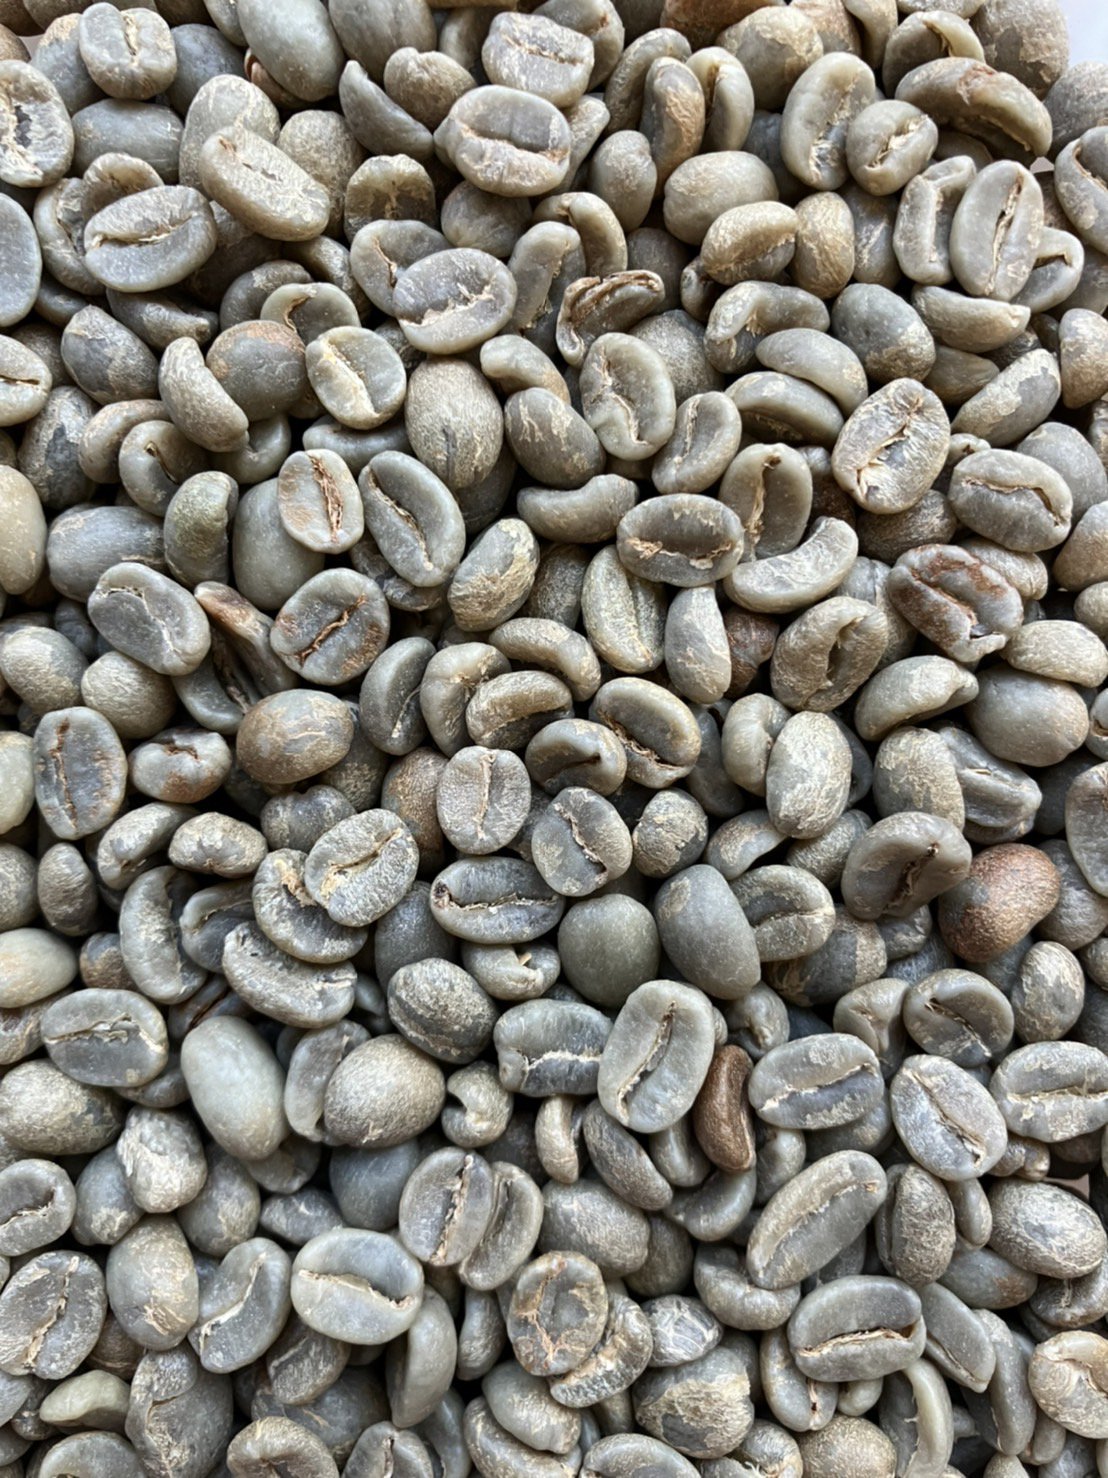 スペシャルティコーヒー生豆 ワイカン ウエウエテナンゴ (Guatemala) 